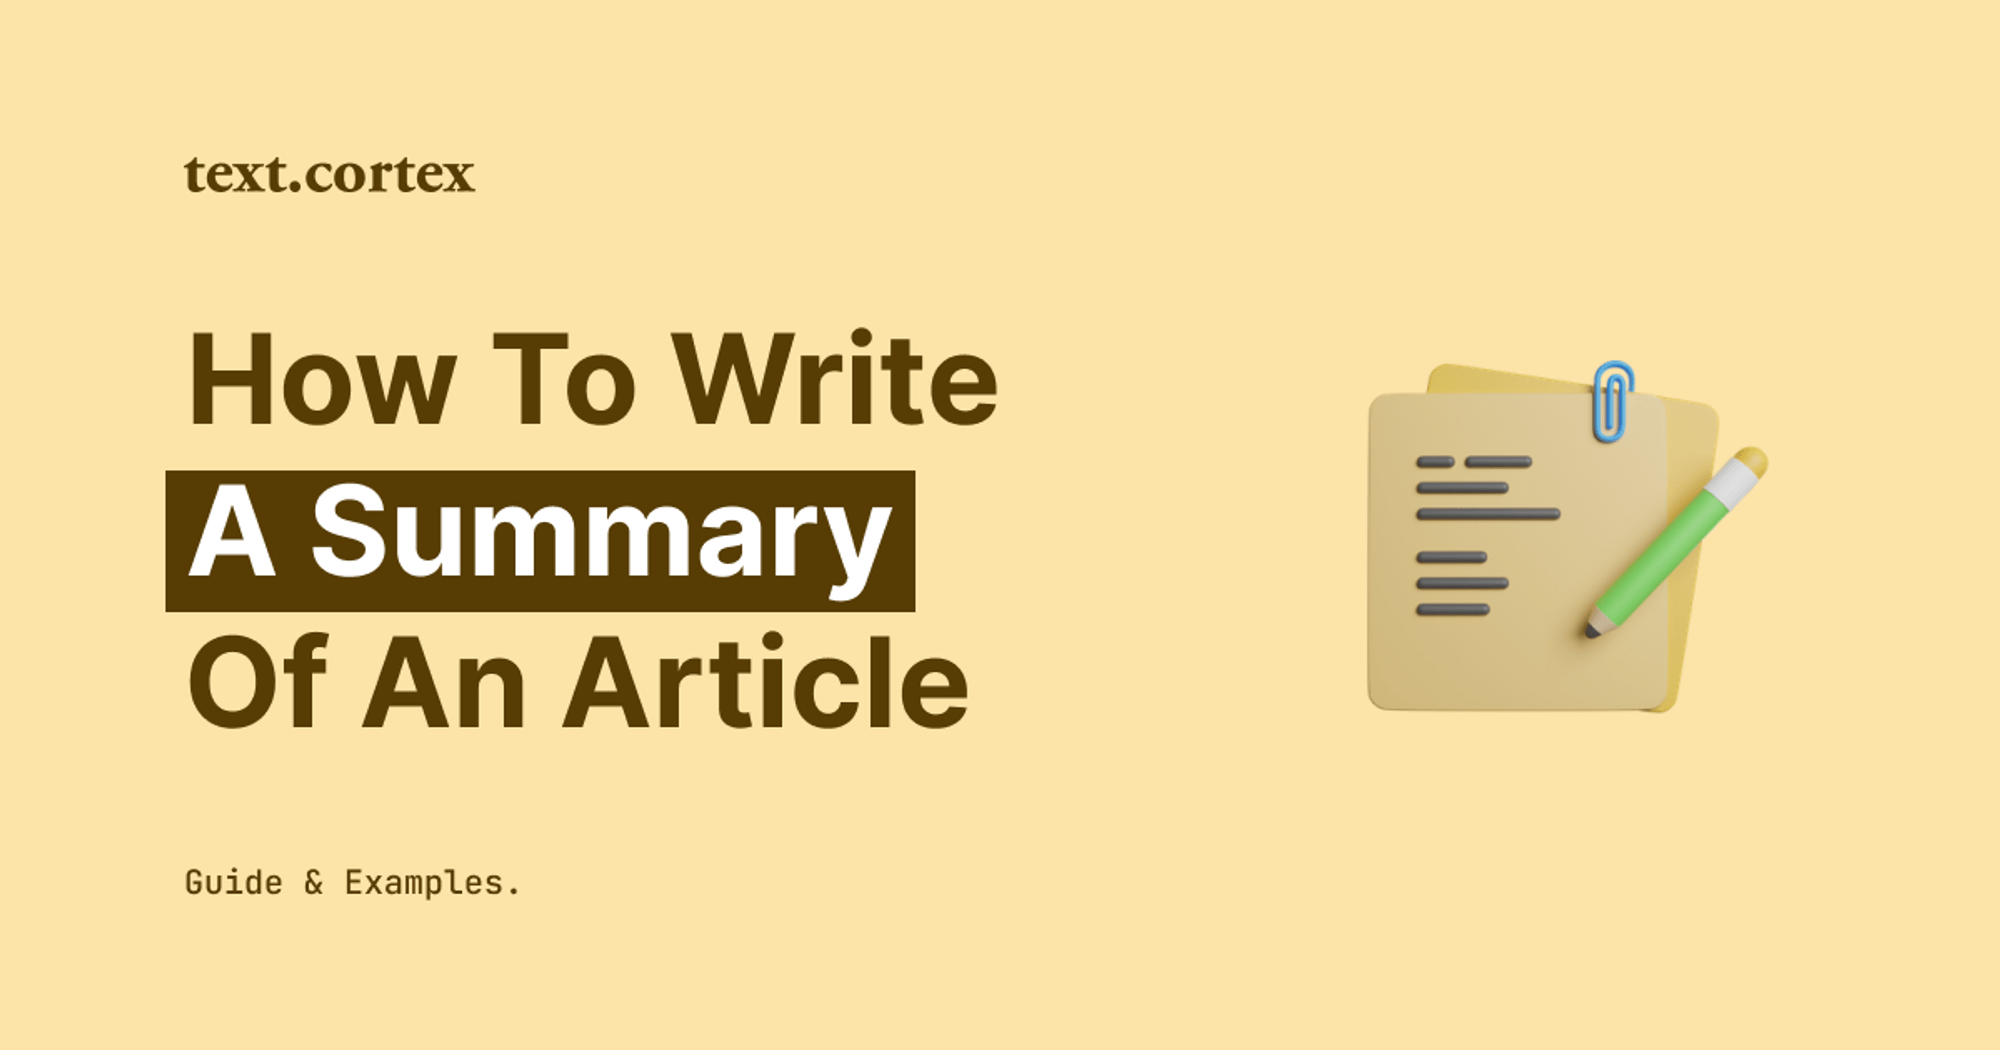 Cómo escribir un resumen de un artículo - Guía y ejemplos